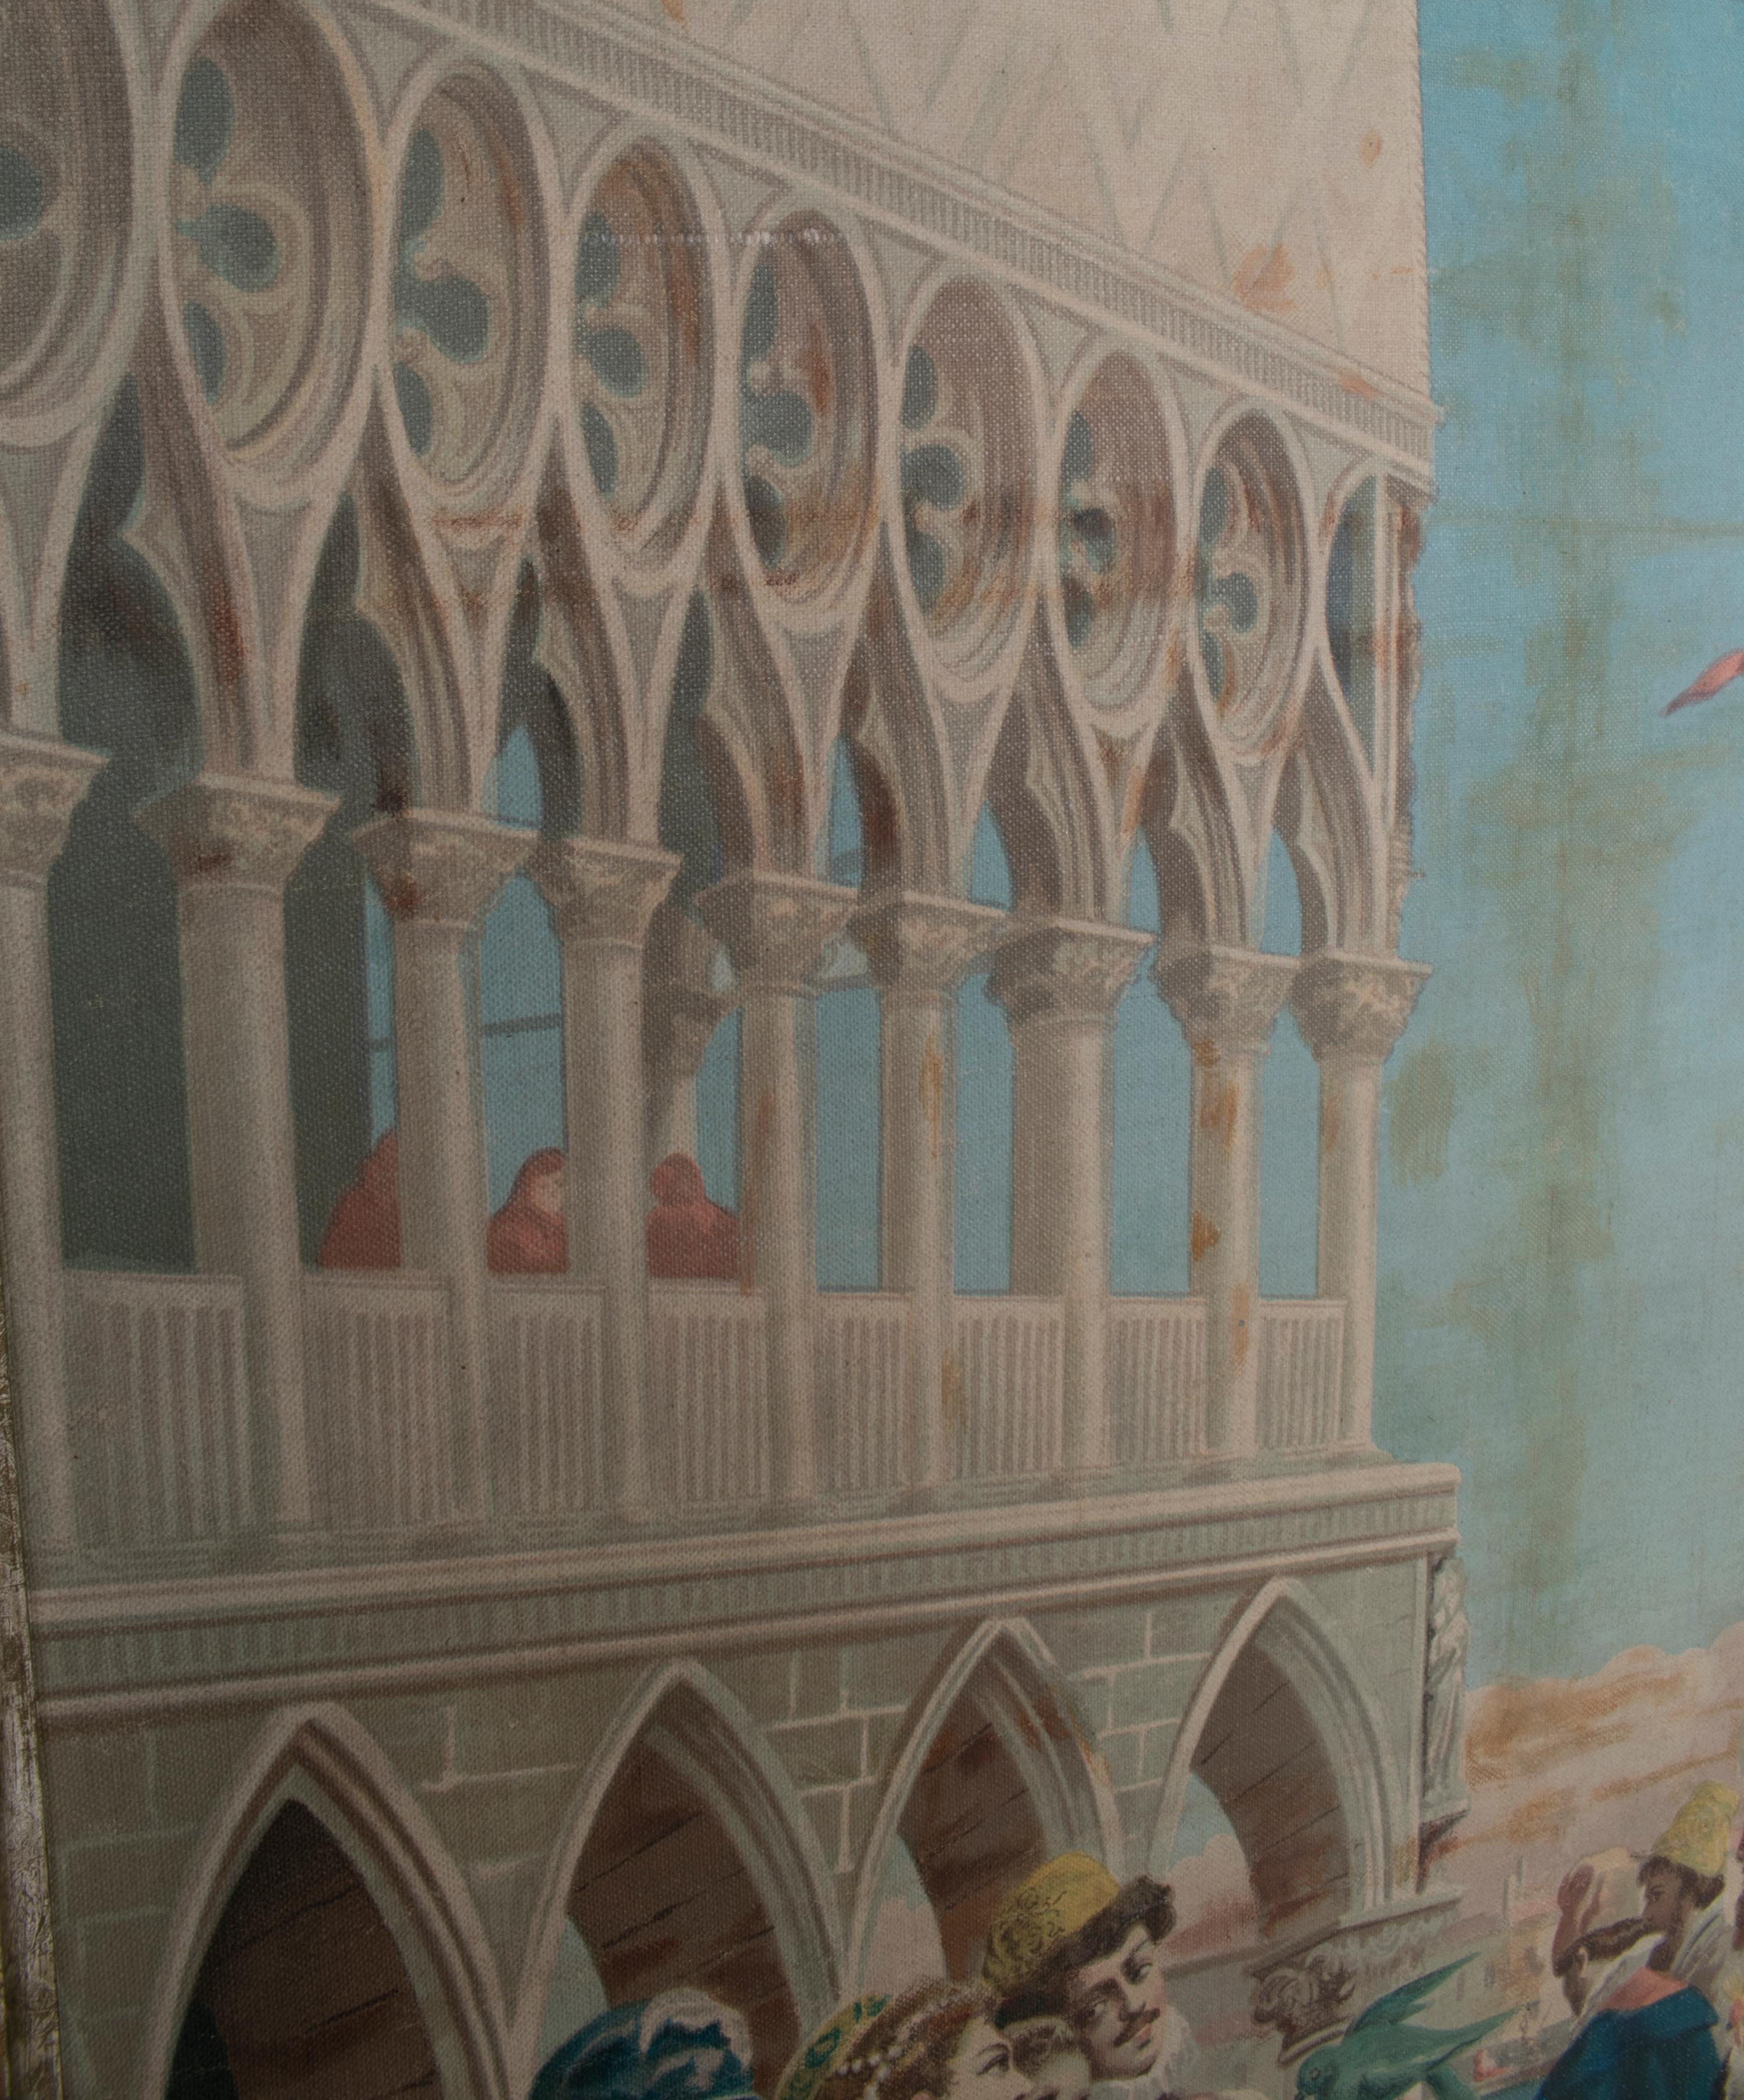 A. Borsari da Delleani 1920s French framed oil on canvas Venice scene. 

Dimensions with frame: 105 x 77 x 4cm.